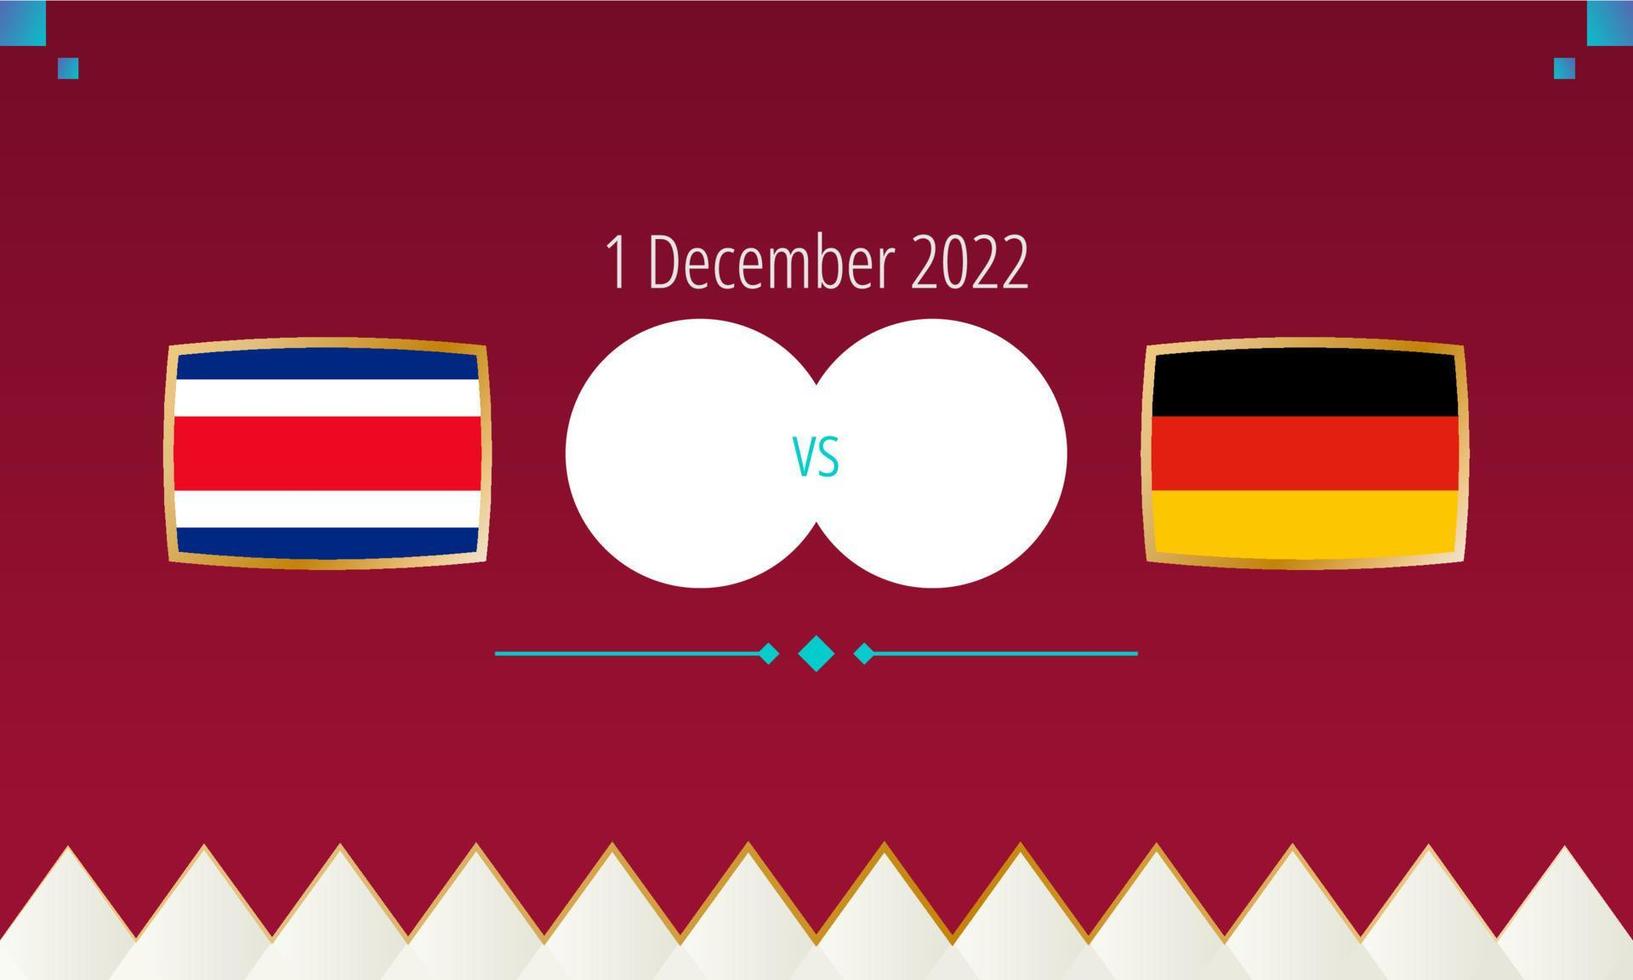 partida de futebol costa rica x alemanha, competição internacional de futebol 2022. vetor